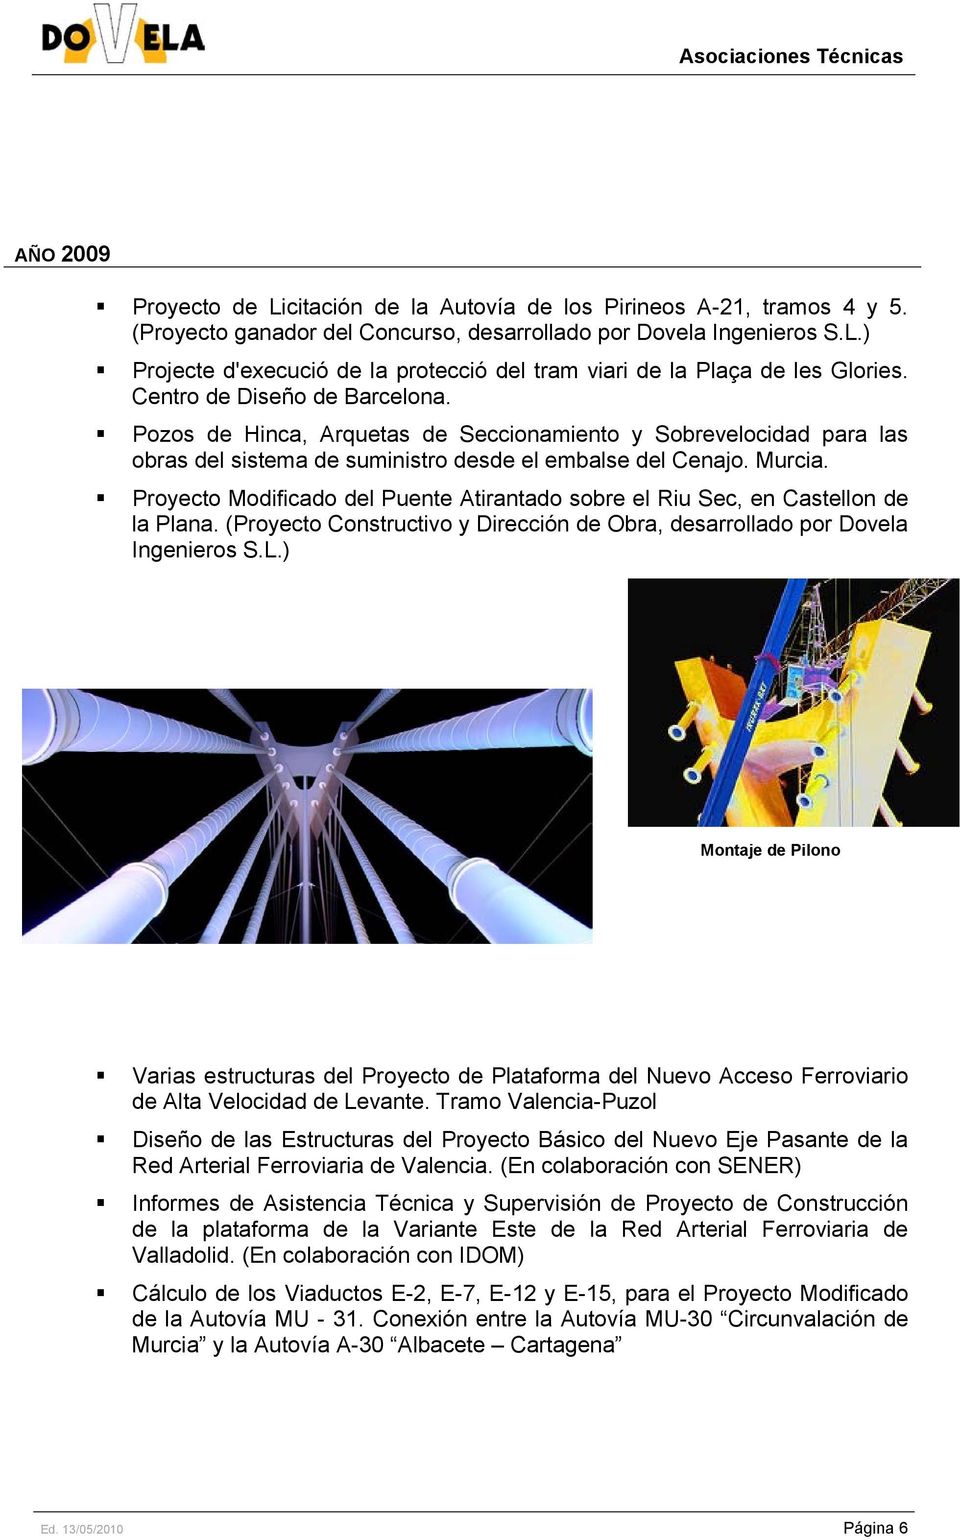 Proyecto Modificado del Puente Atirantado sobre el Riu Sec, en Castellon de la Plana. (Proyecto Constructivo y Dirección de Obra, desarrollado por Dovela Ingenieros S.L.